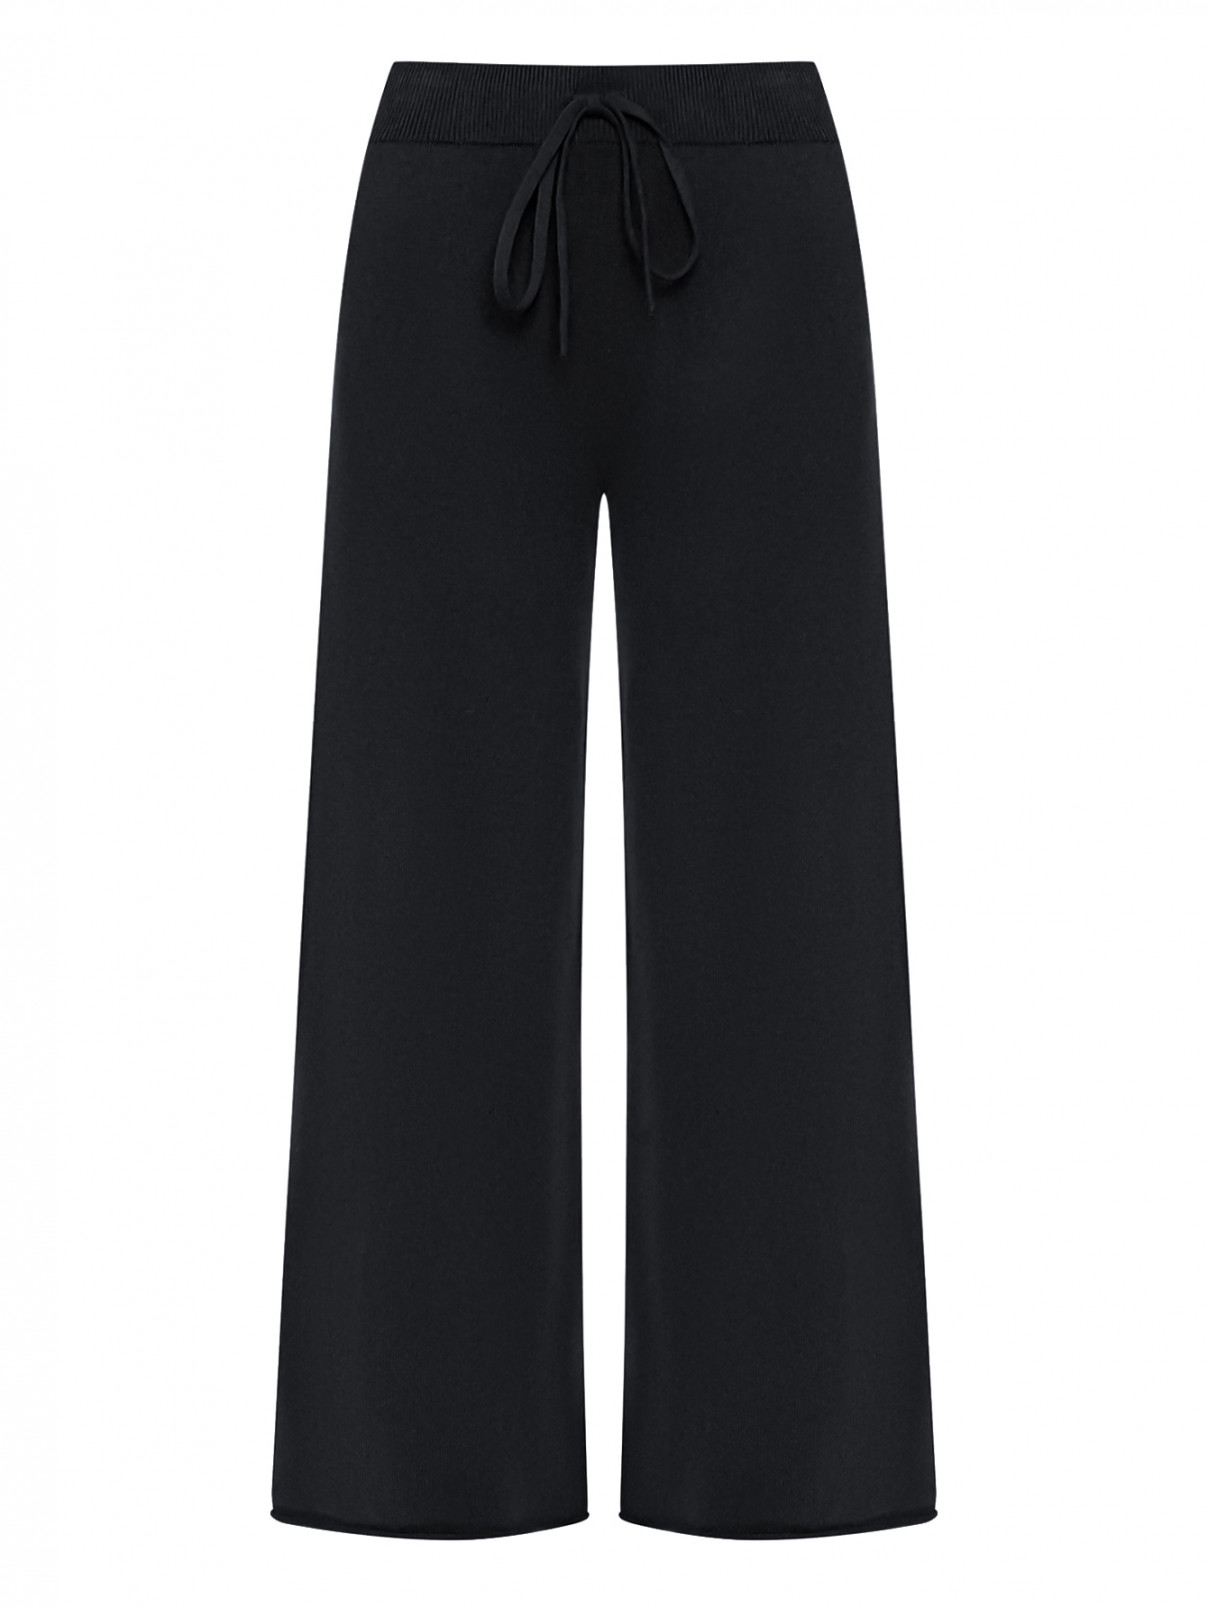 Трикотажные брюки на резинке с карманами Liviana Conti  –  Общий вид  – Цвет:  Синий